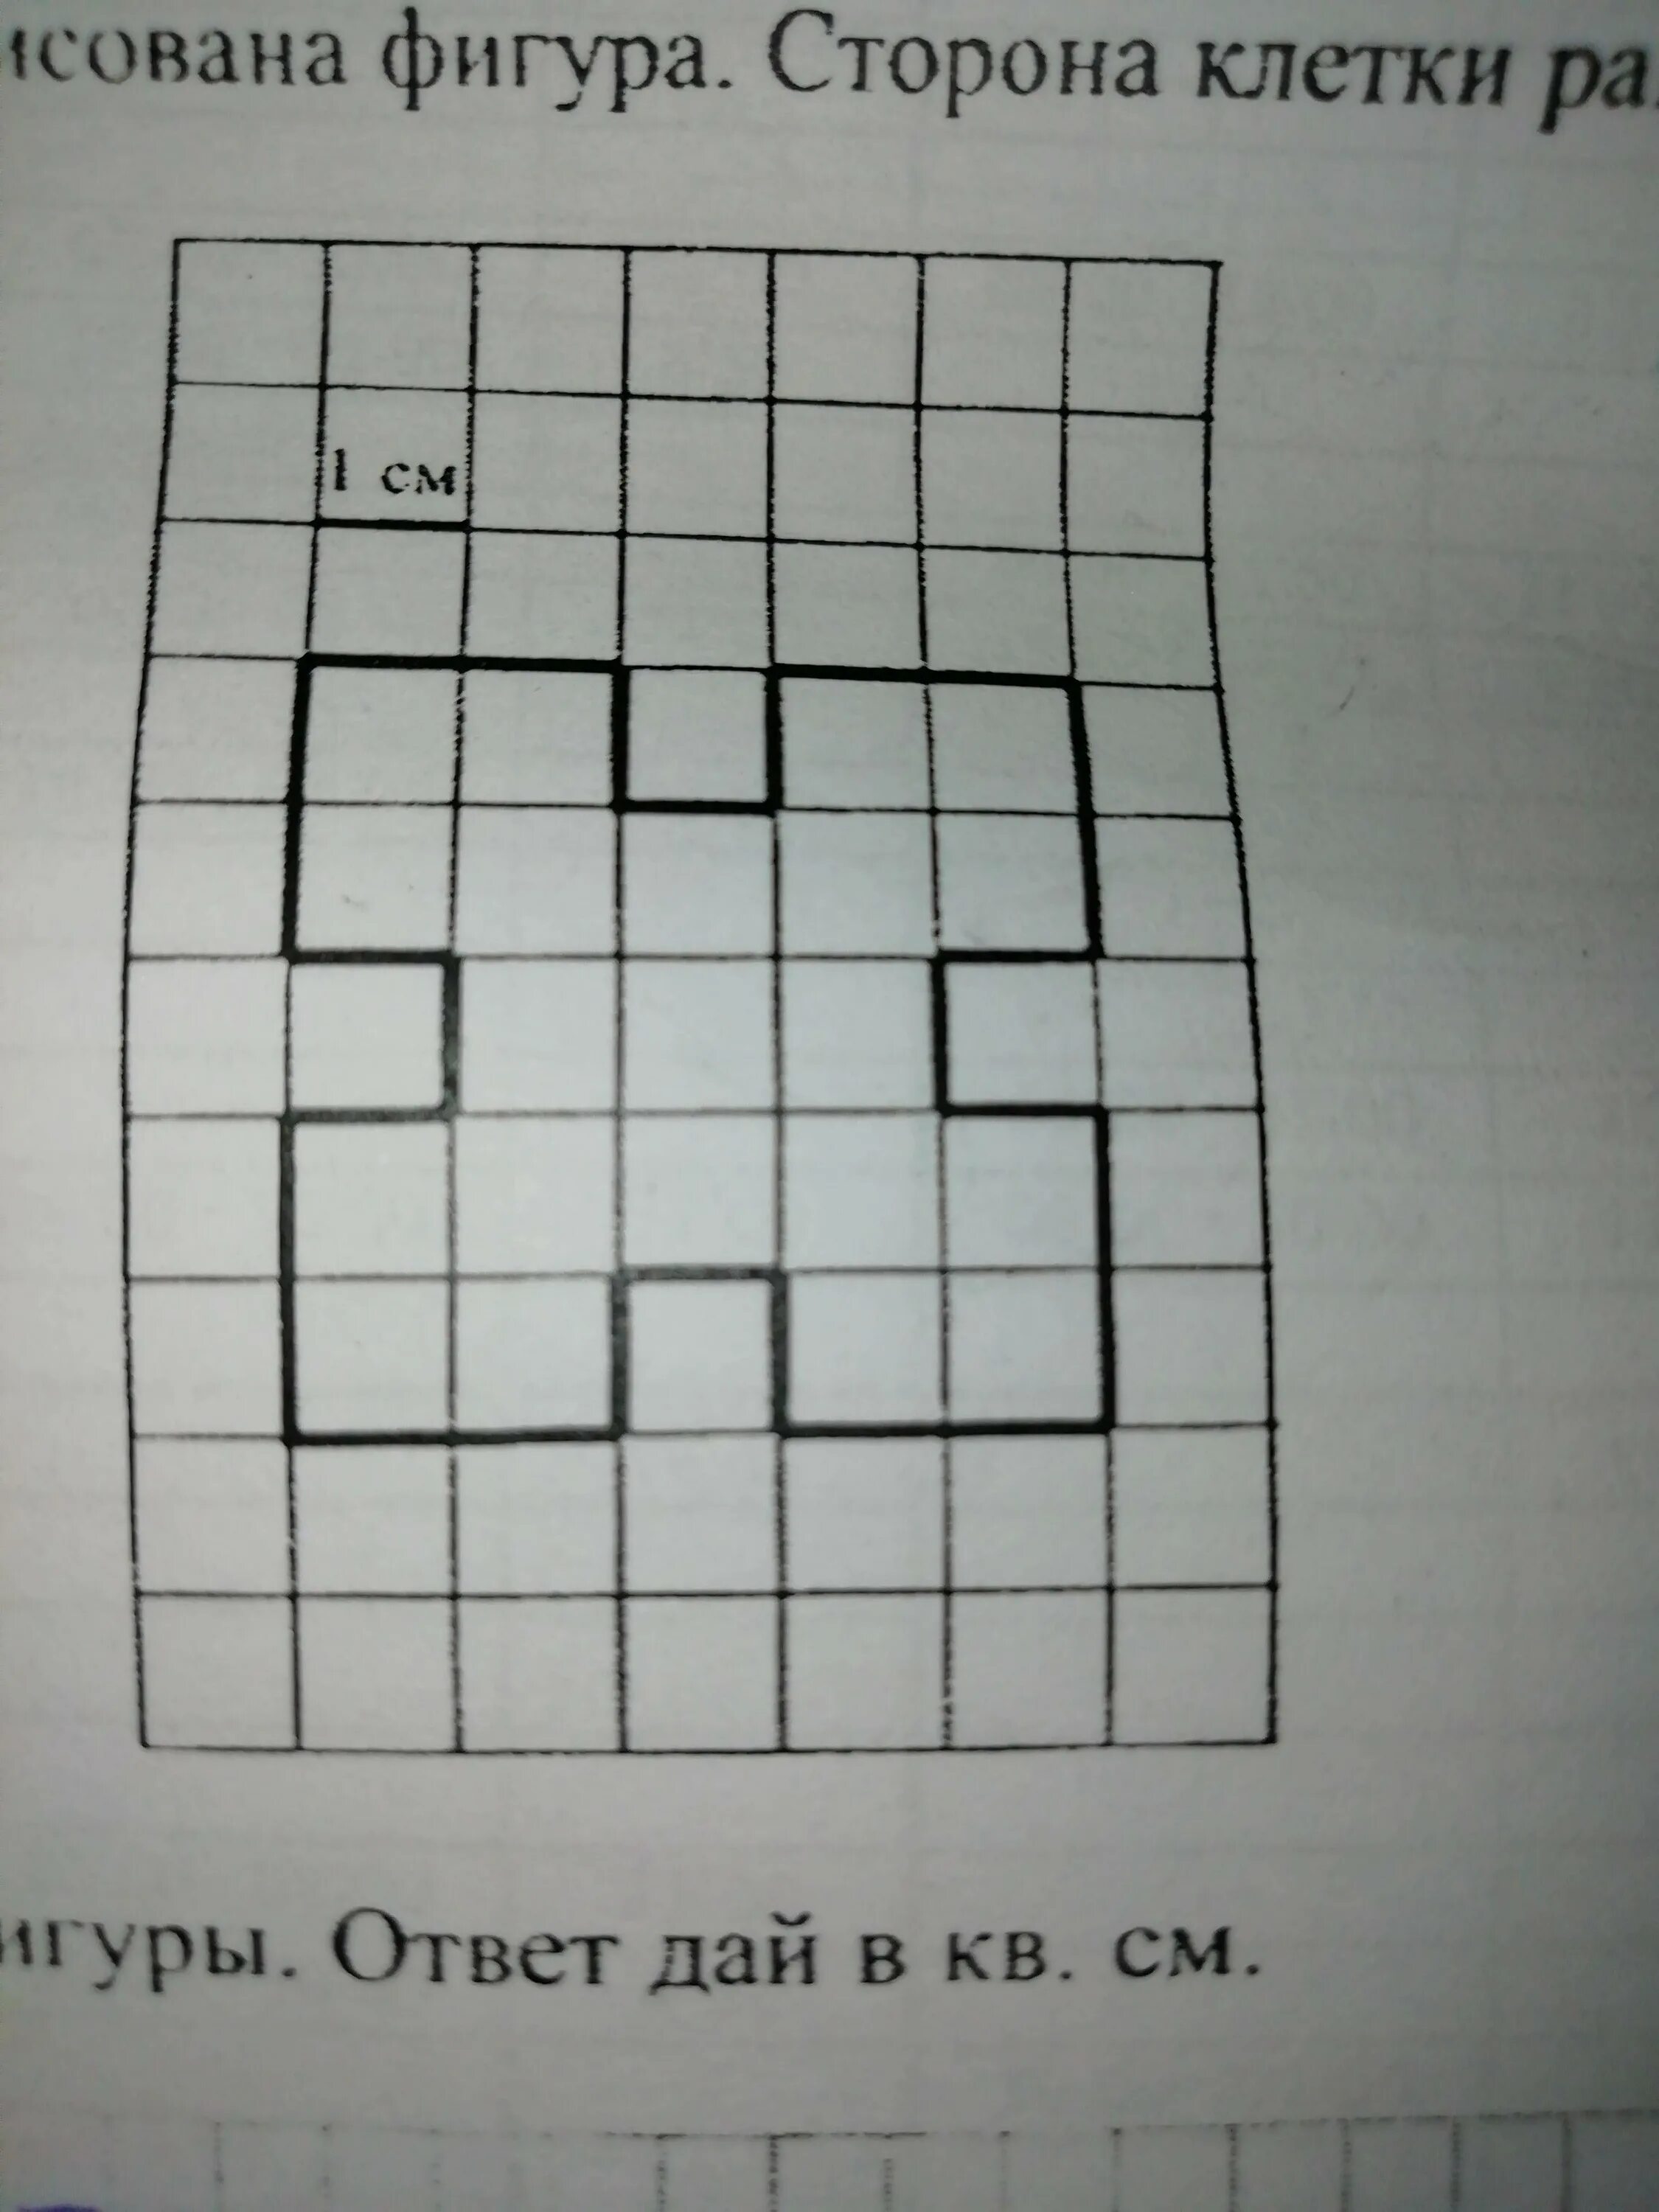 Площадь фигуры впр 4 класс по математике. Сторона клетки равна 1 см. Найди площадь этой фигуры. Найдите площадь фигуры по клеткам. Площадь прямоугольника по клеточкам.